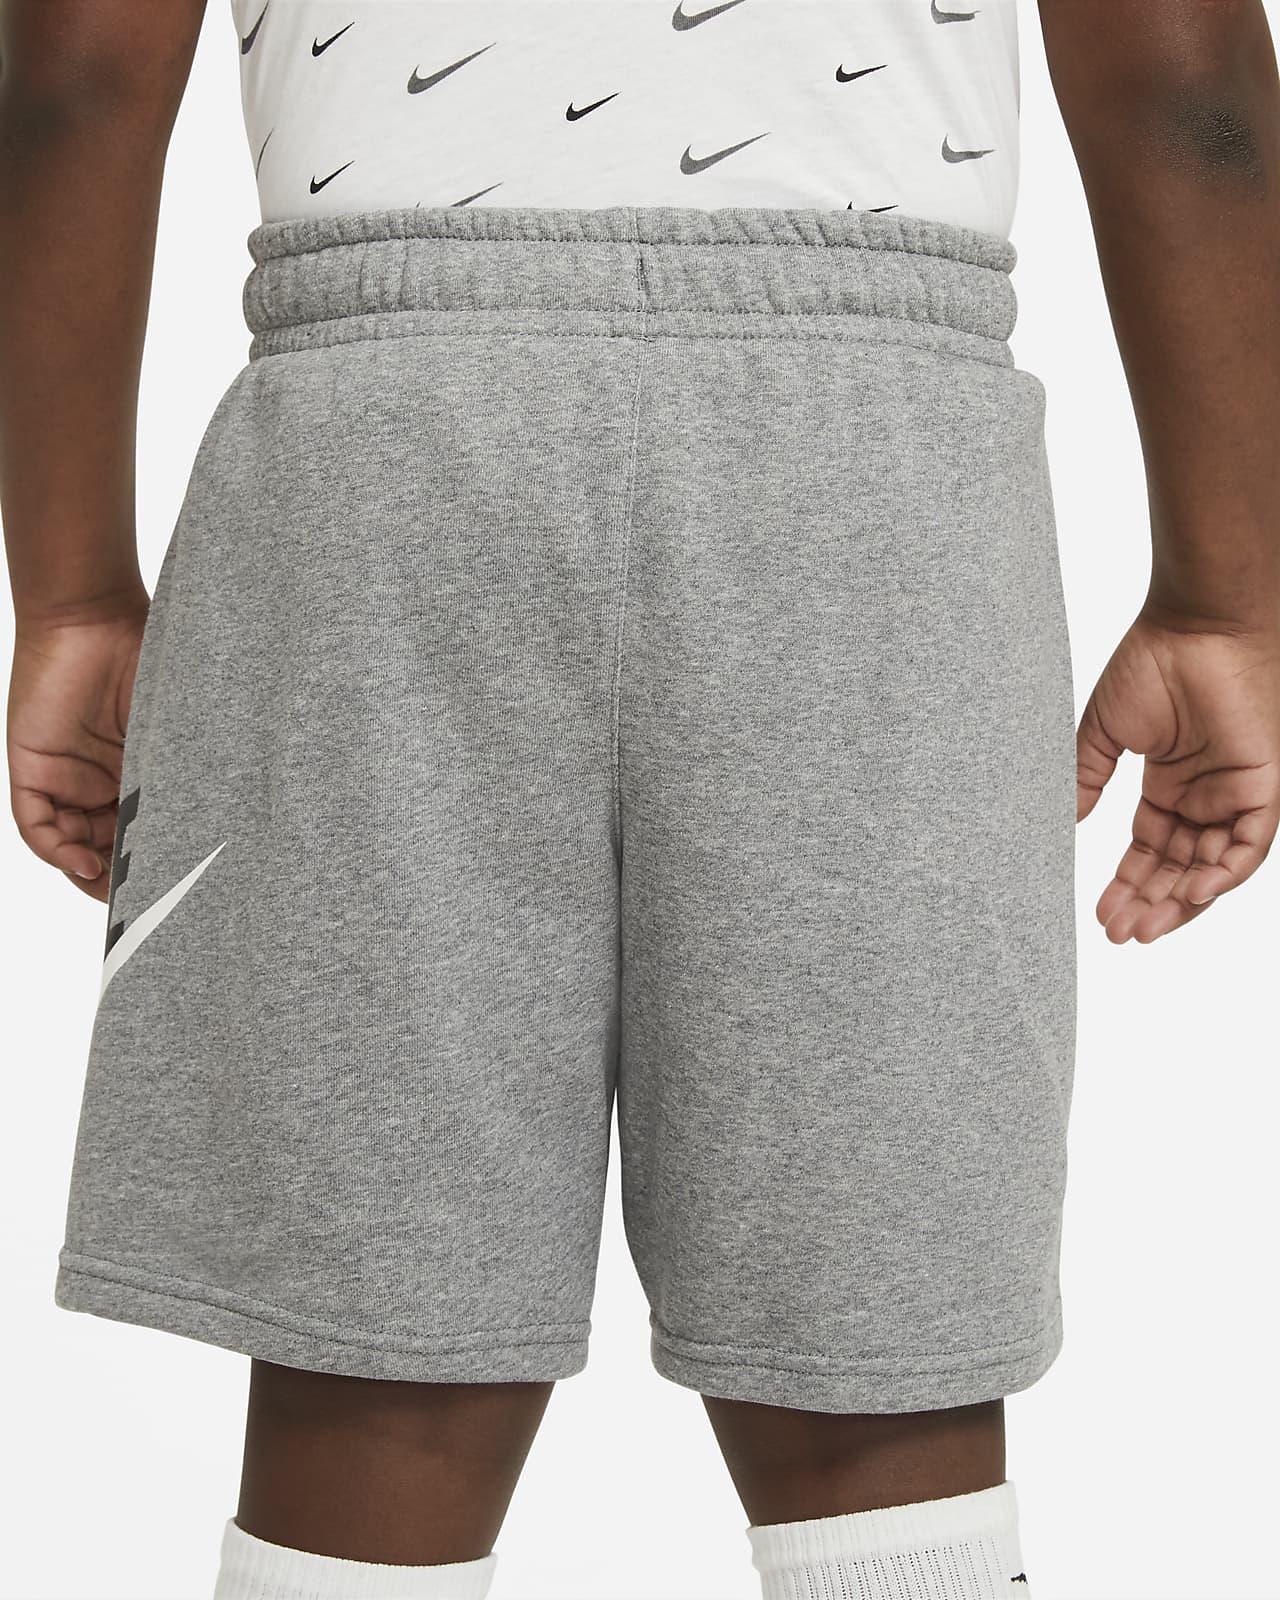 grey nike shorts kids